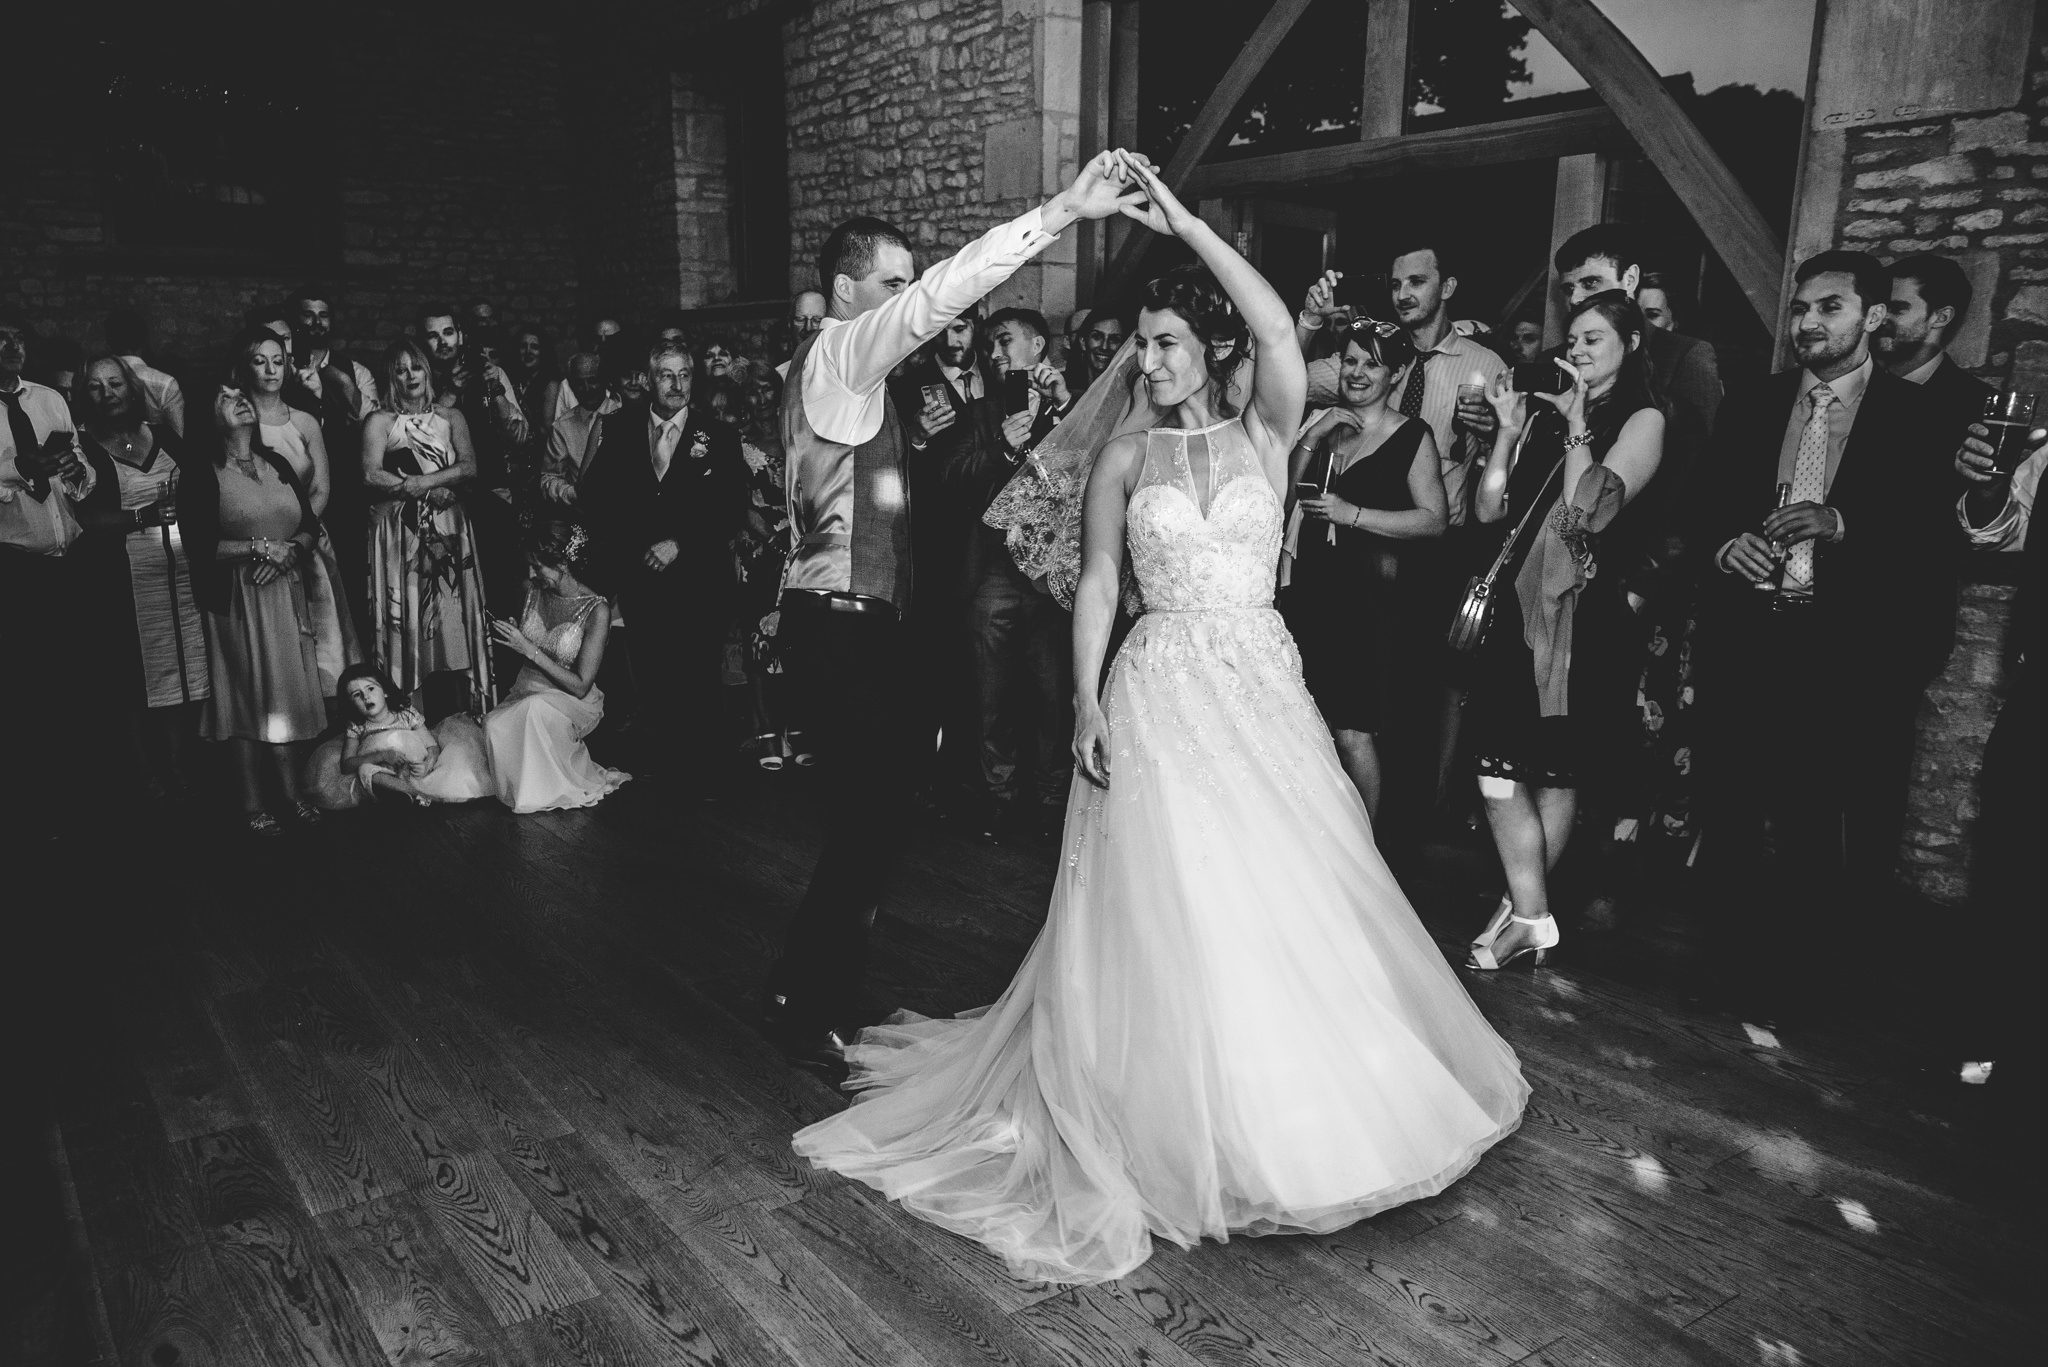 Groom twirling bride